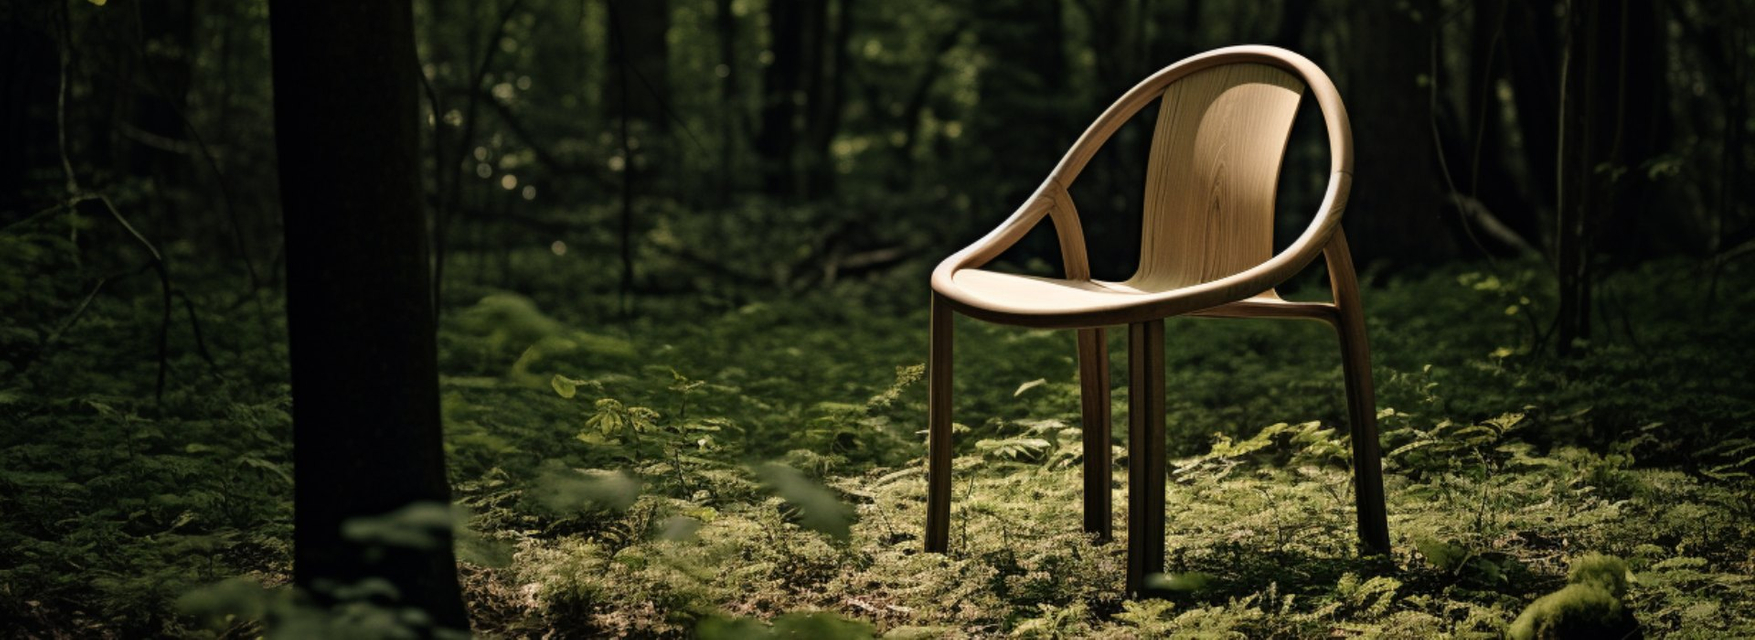 sustainble furniture customization